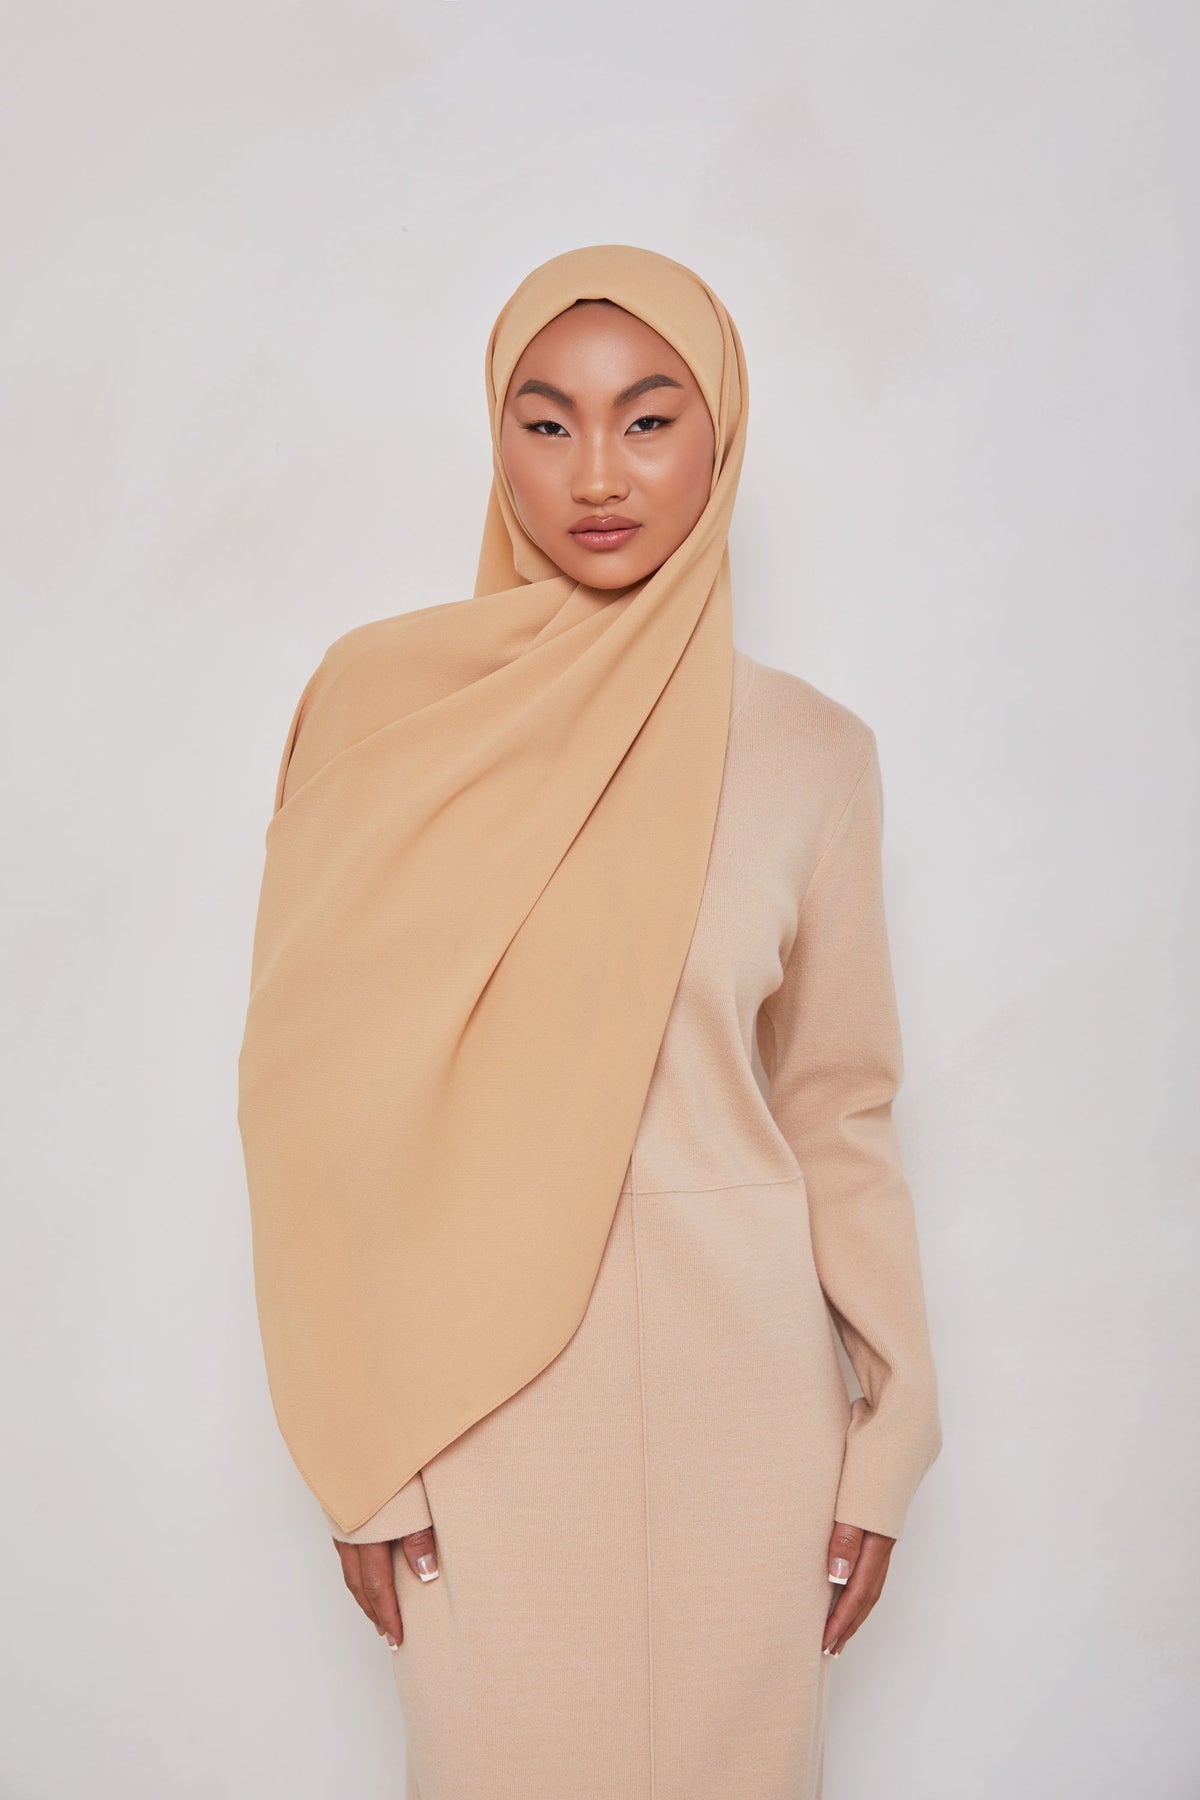 TEXTURE Twill Chiffon Hijab - Tanned epschoolboard 